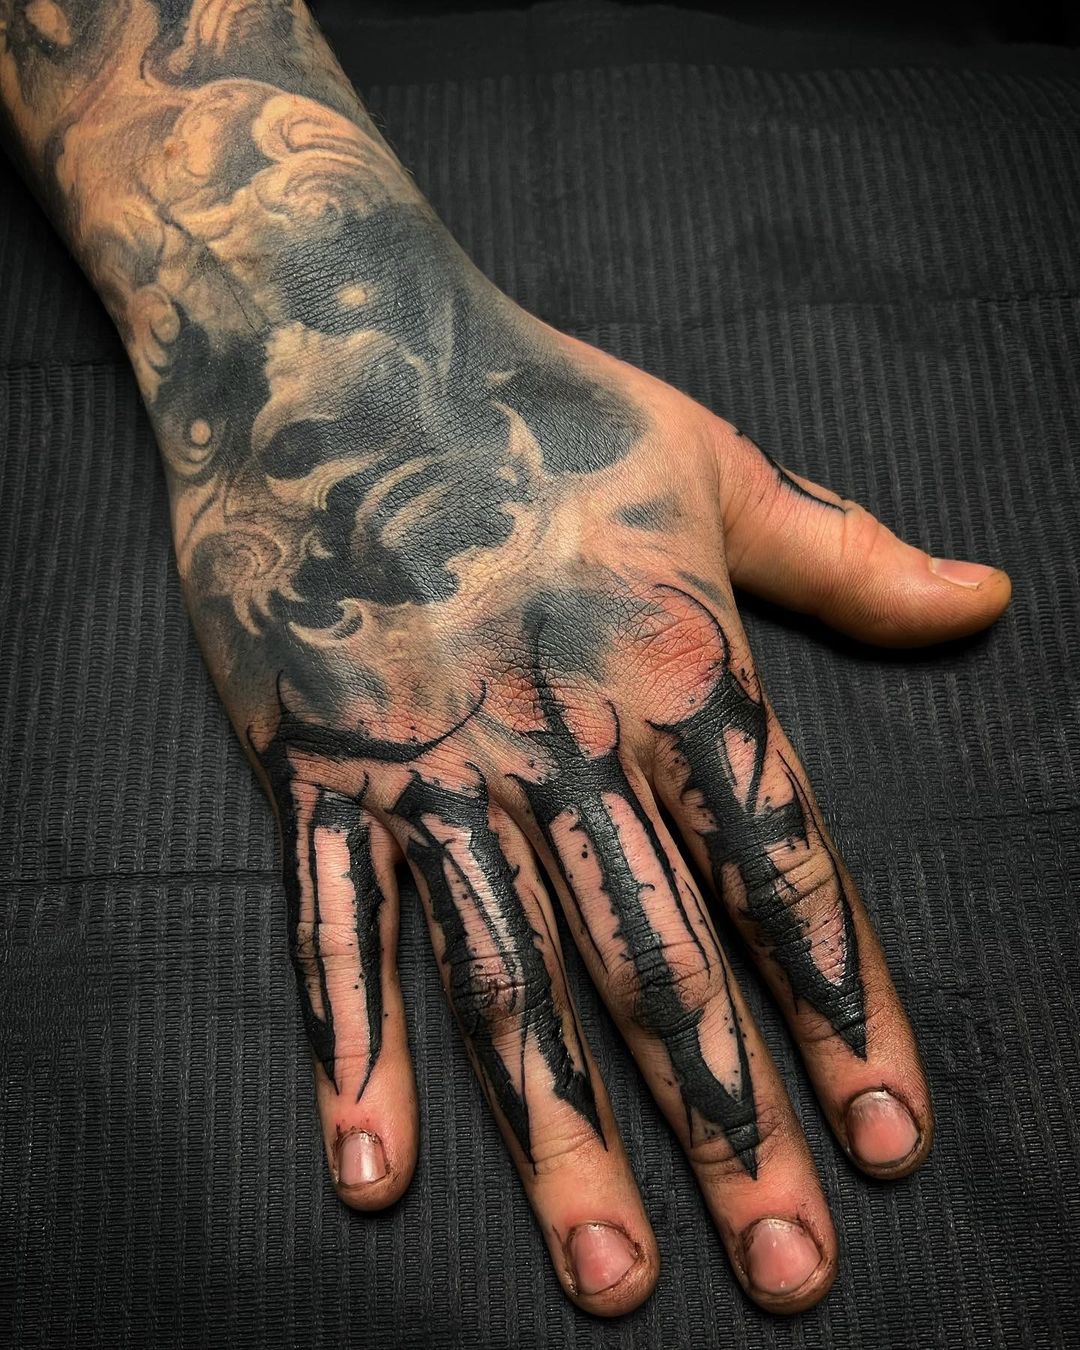 Interesting FINGERS tattoos for men